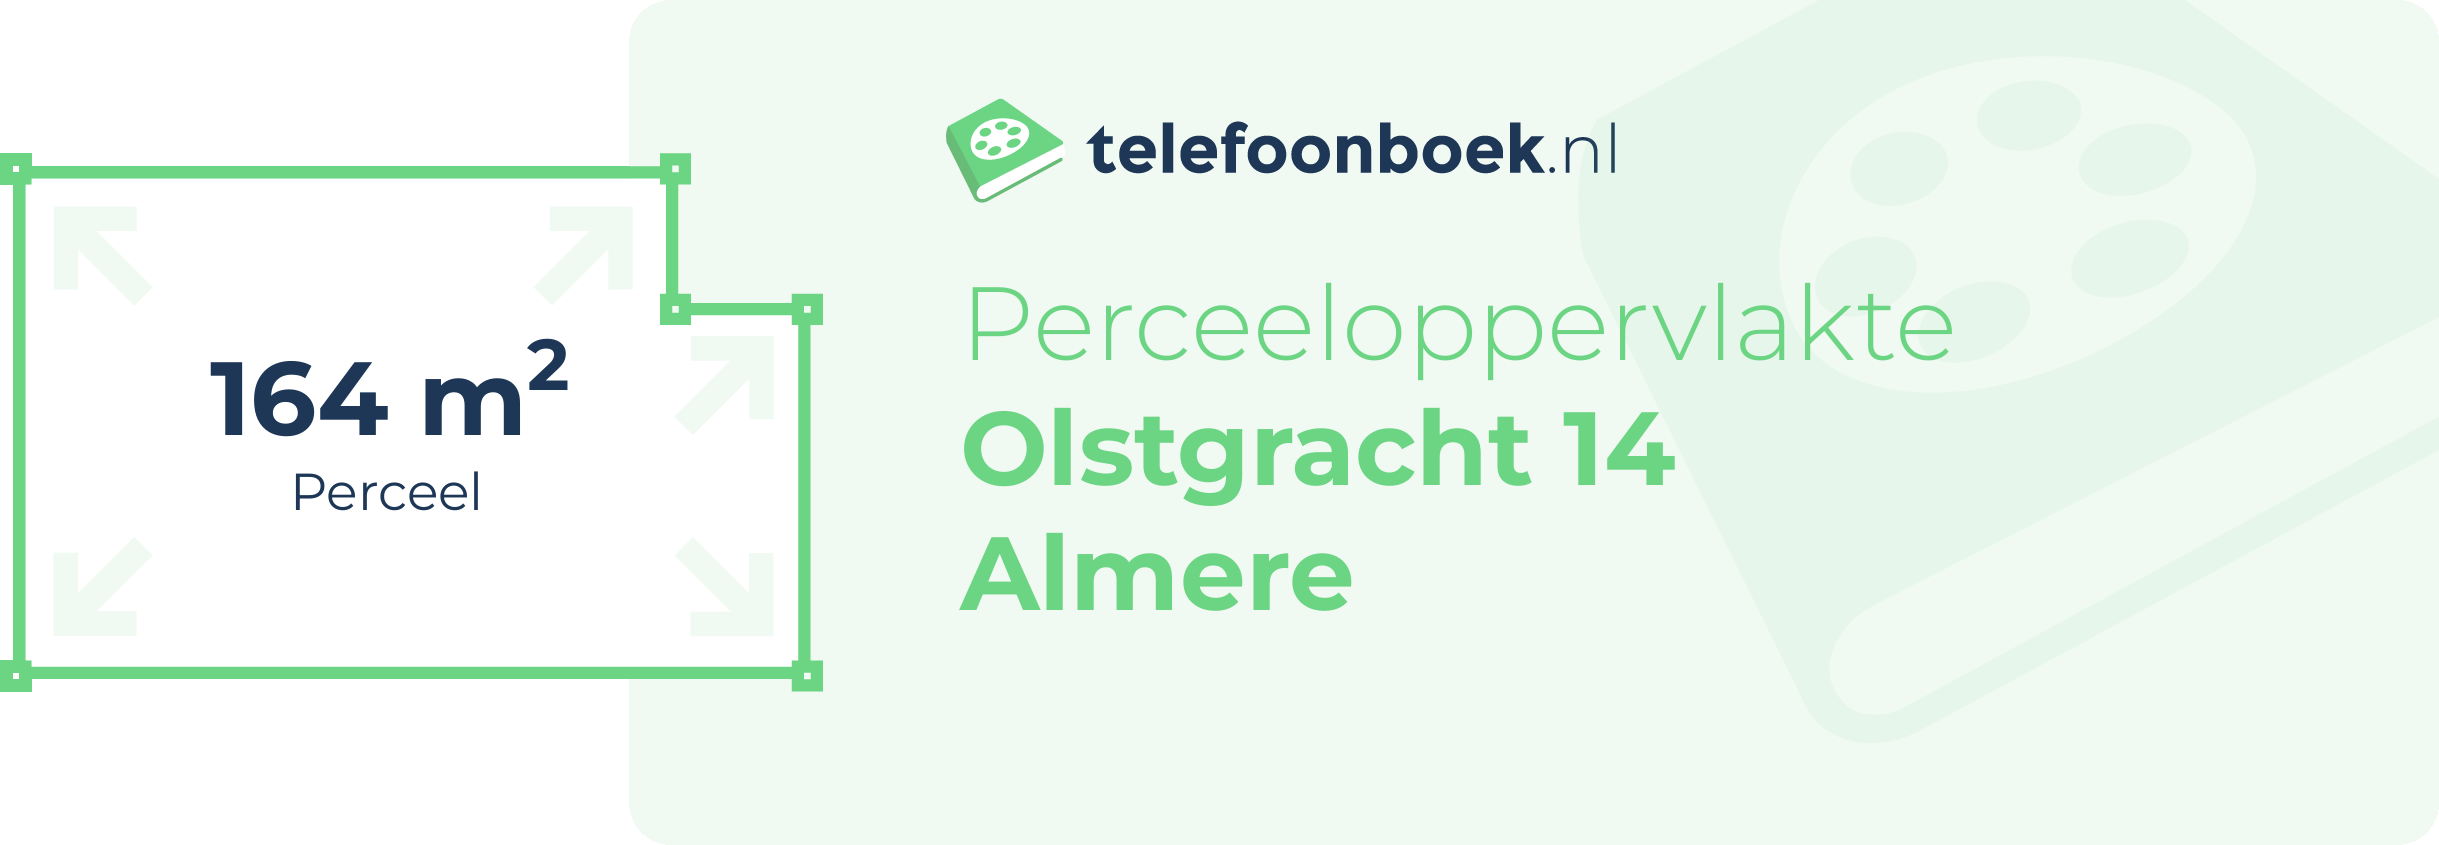 Perceeloppervlakte Olstgracht 14 Almere